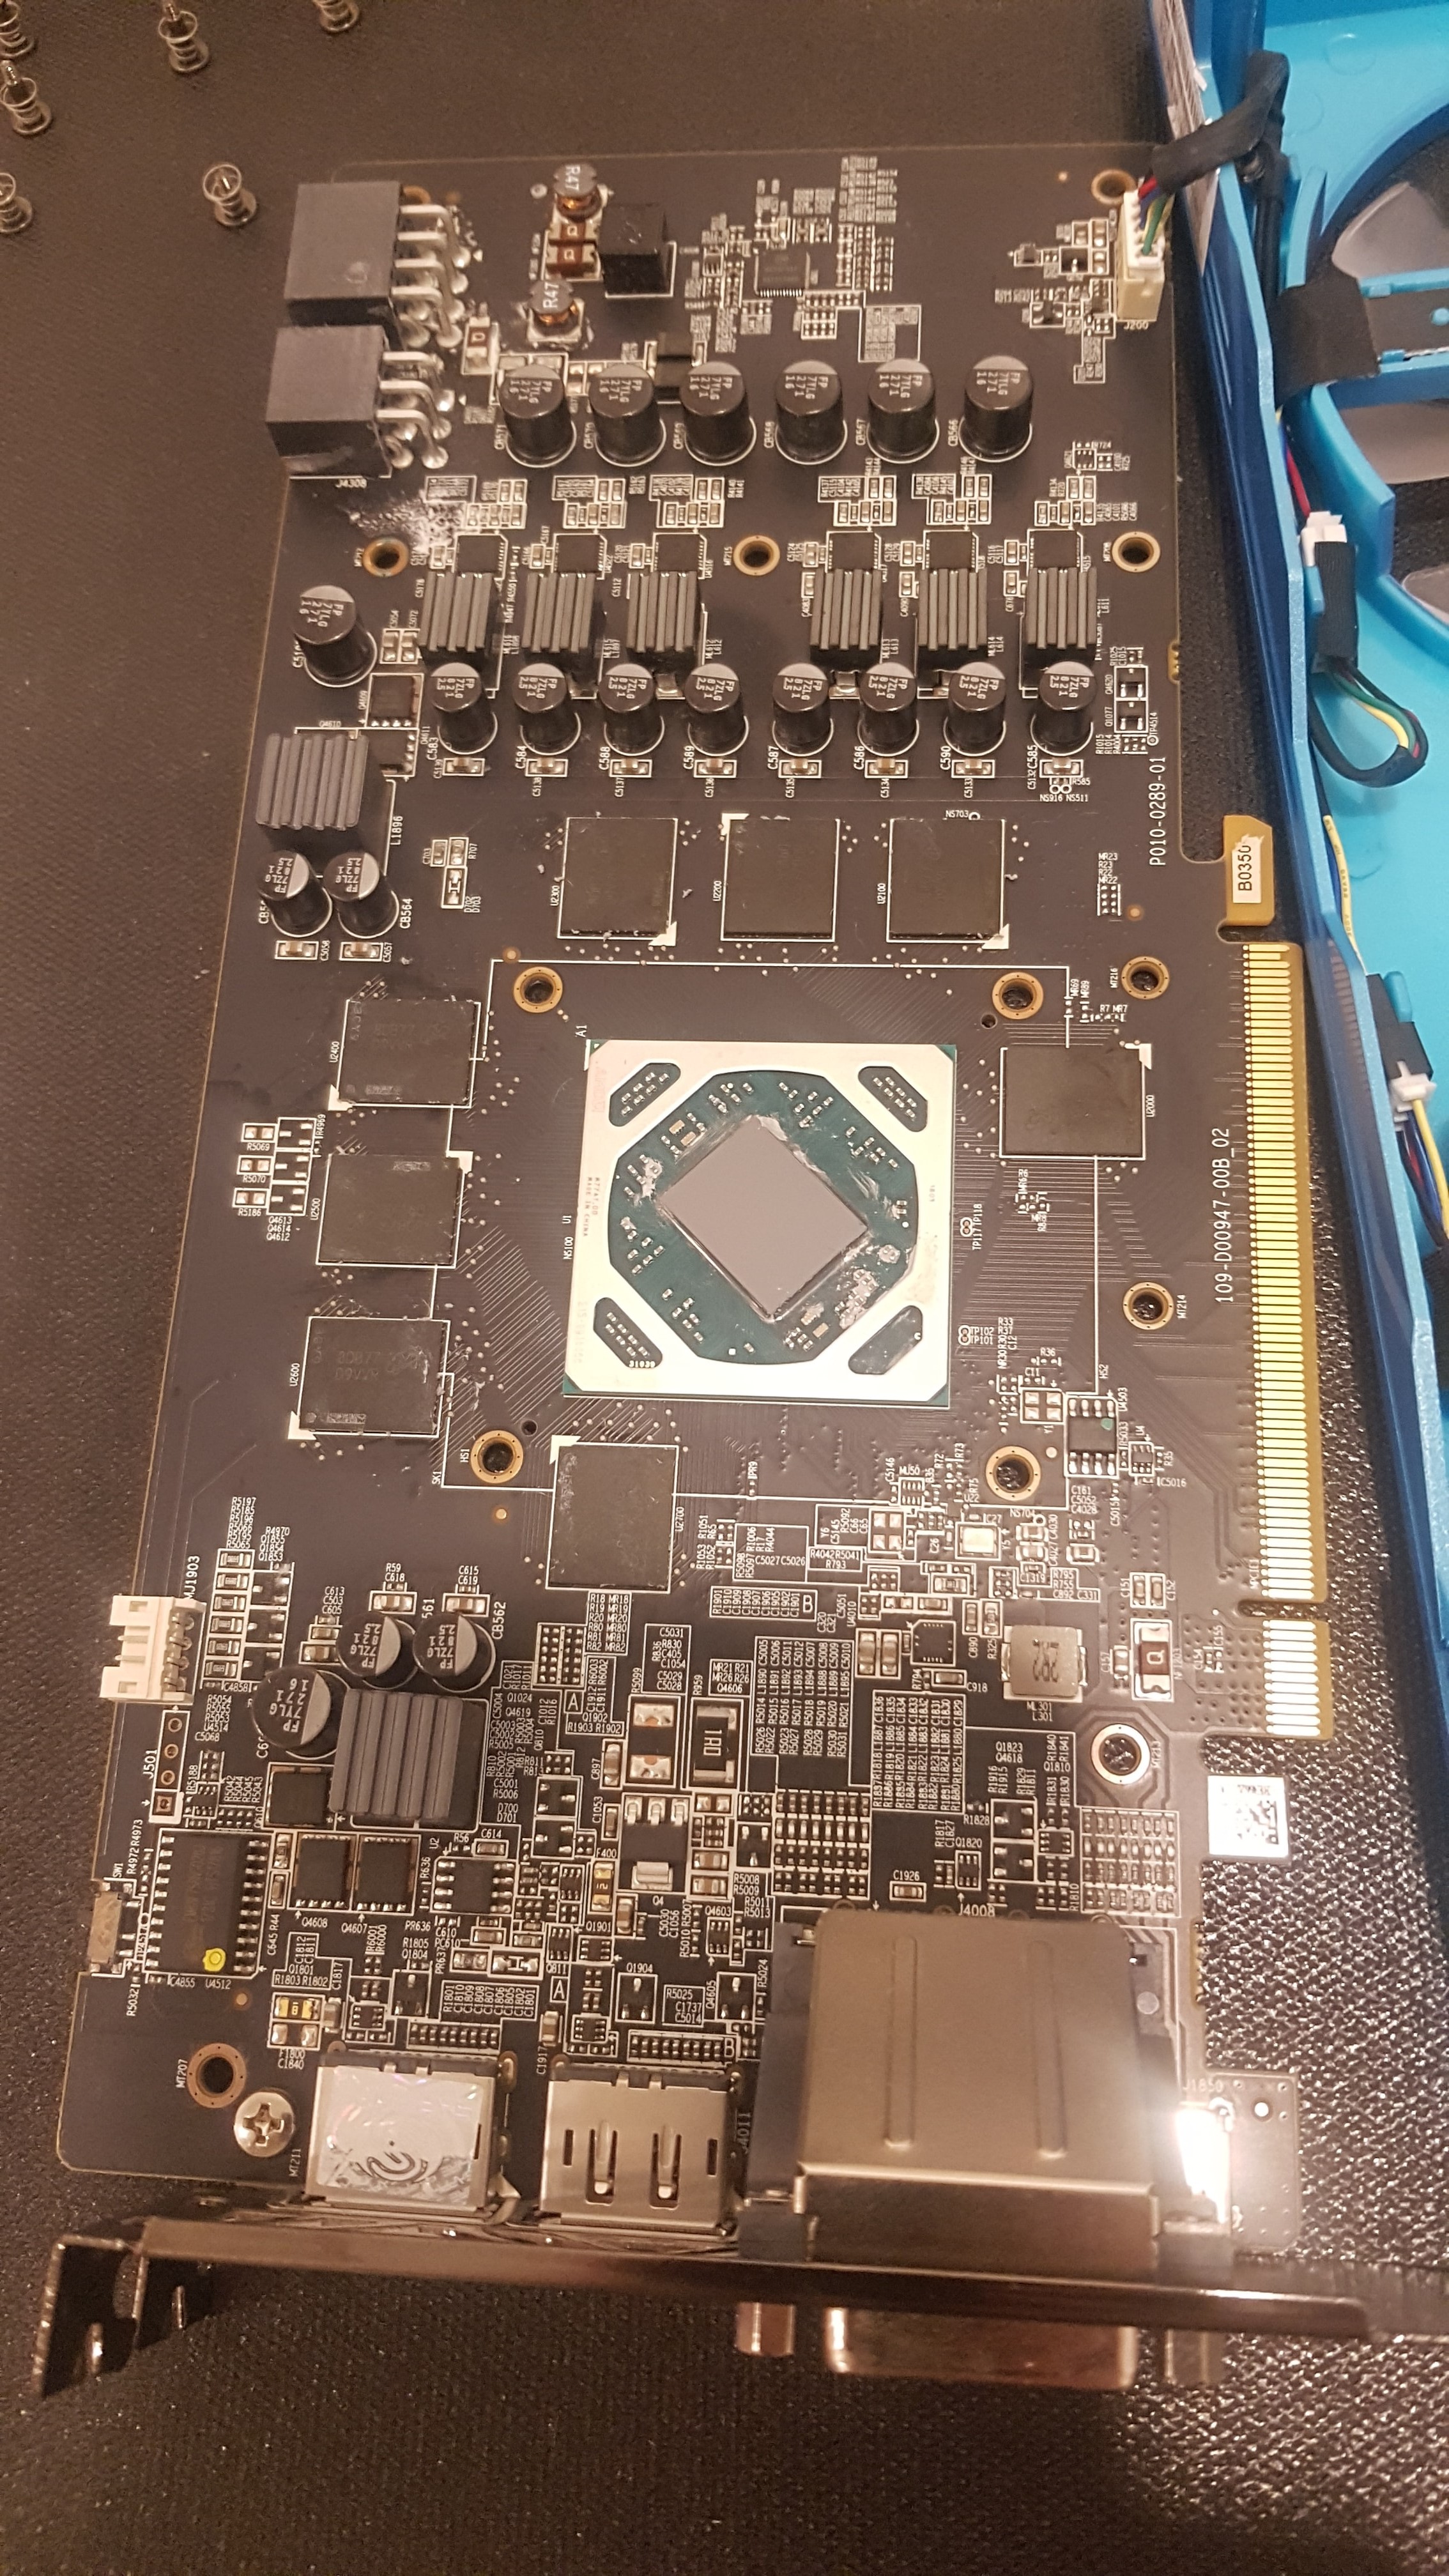 A photo of a dissembled GPU